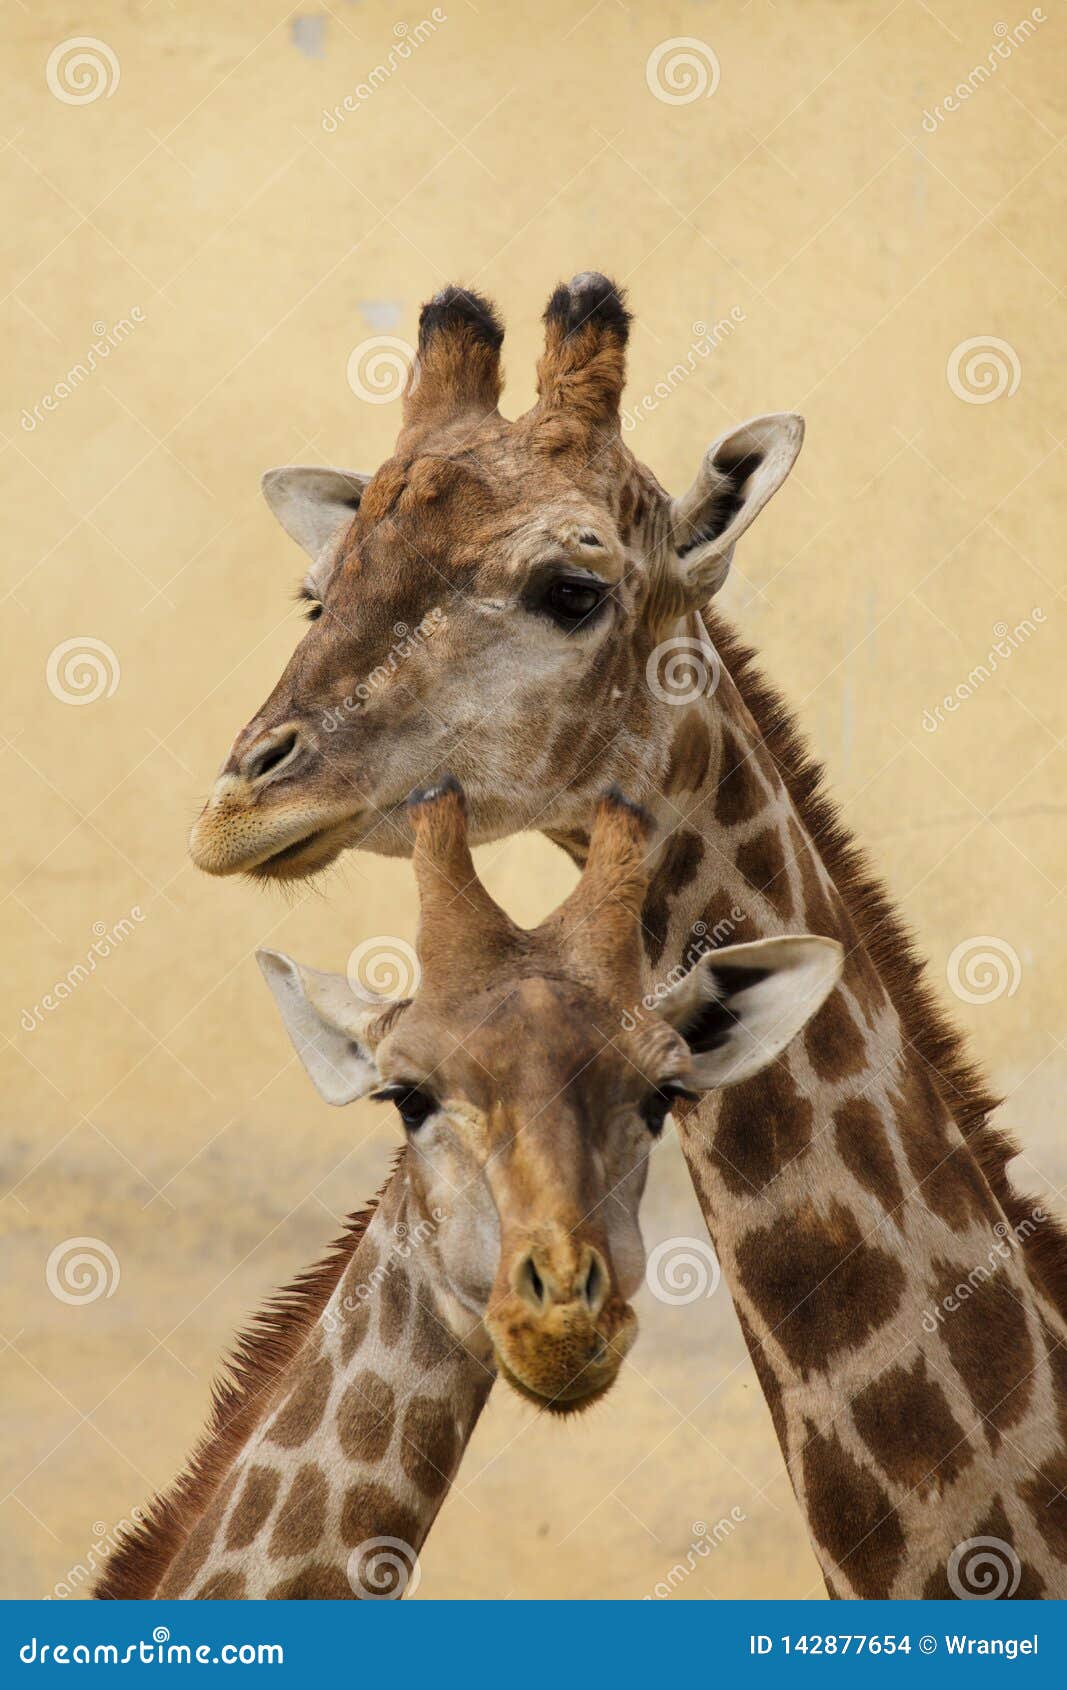 angolan giraffe giraffa camelopardalis angolensis